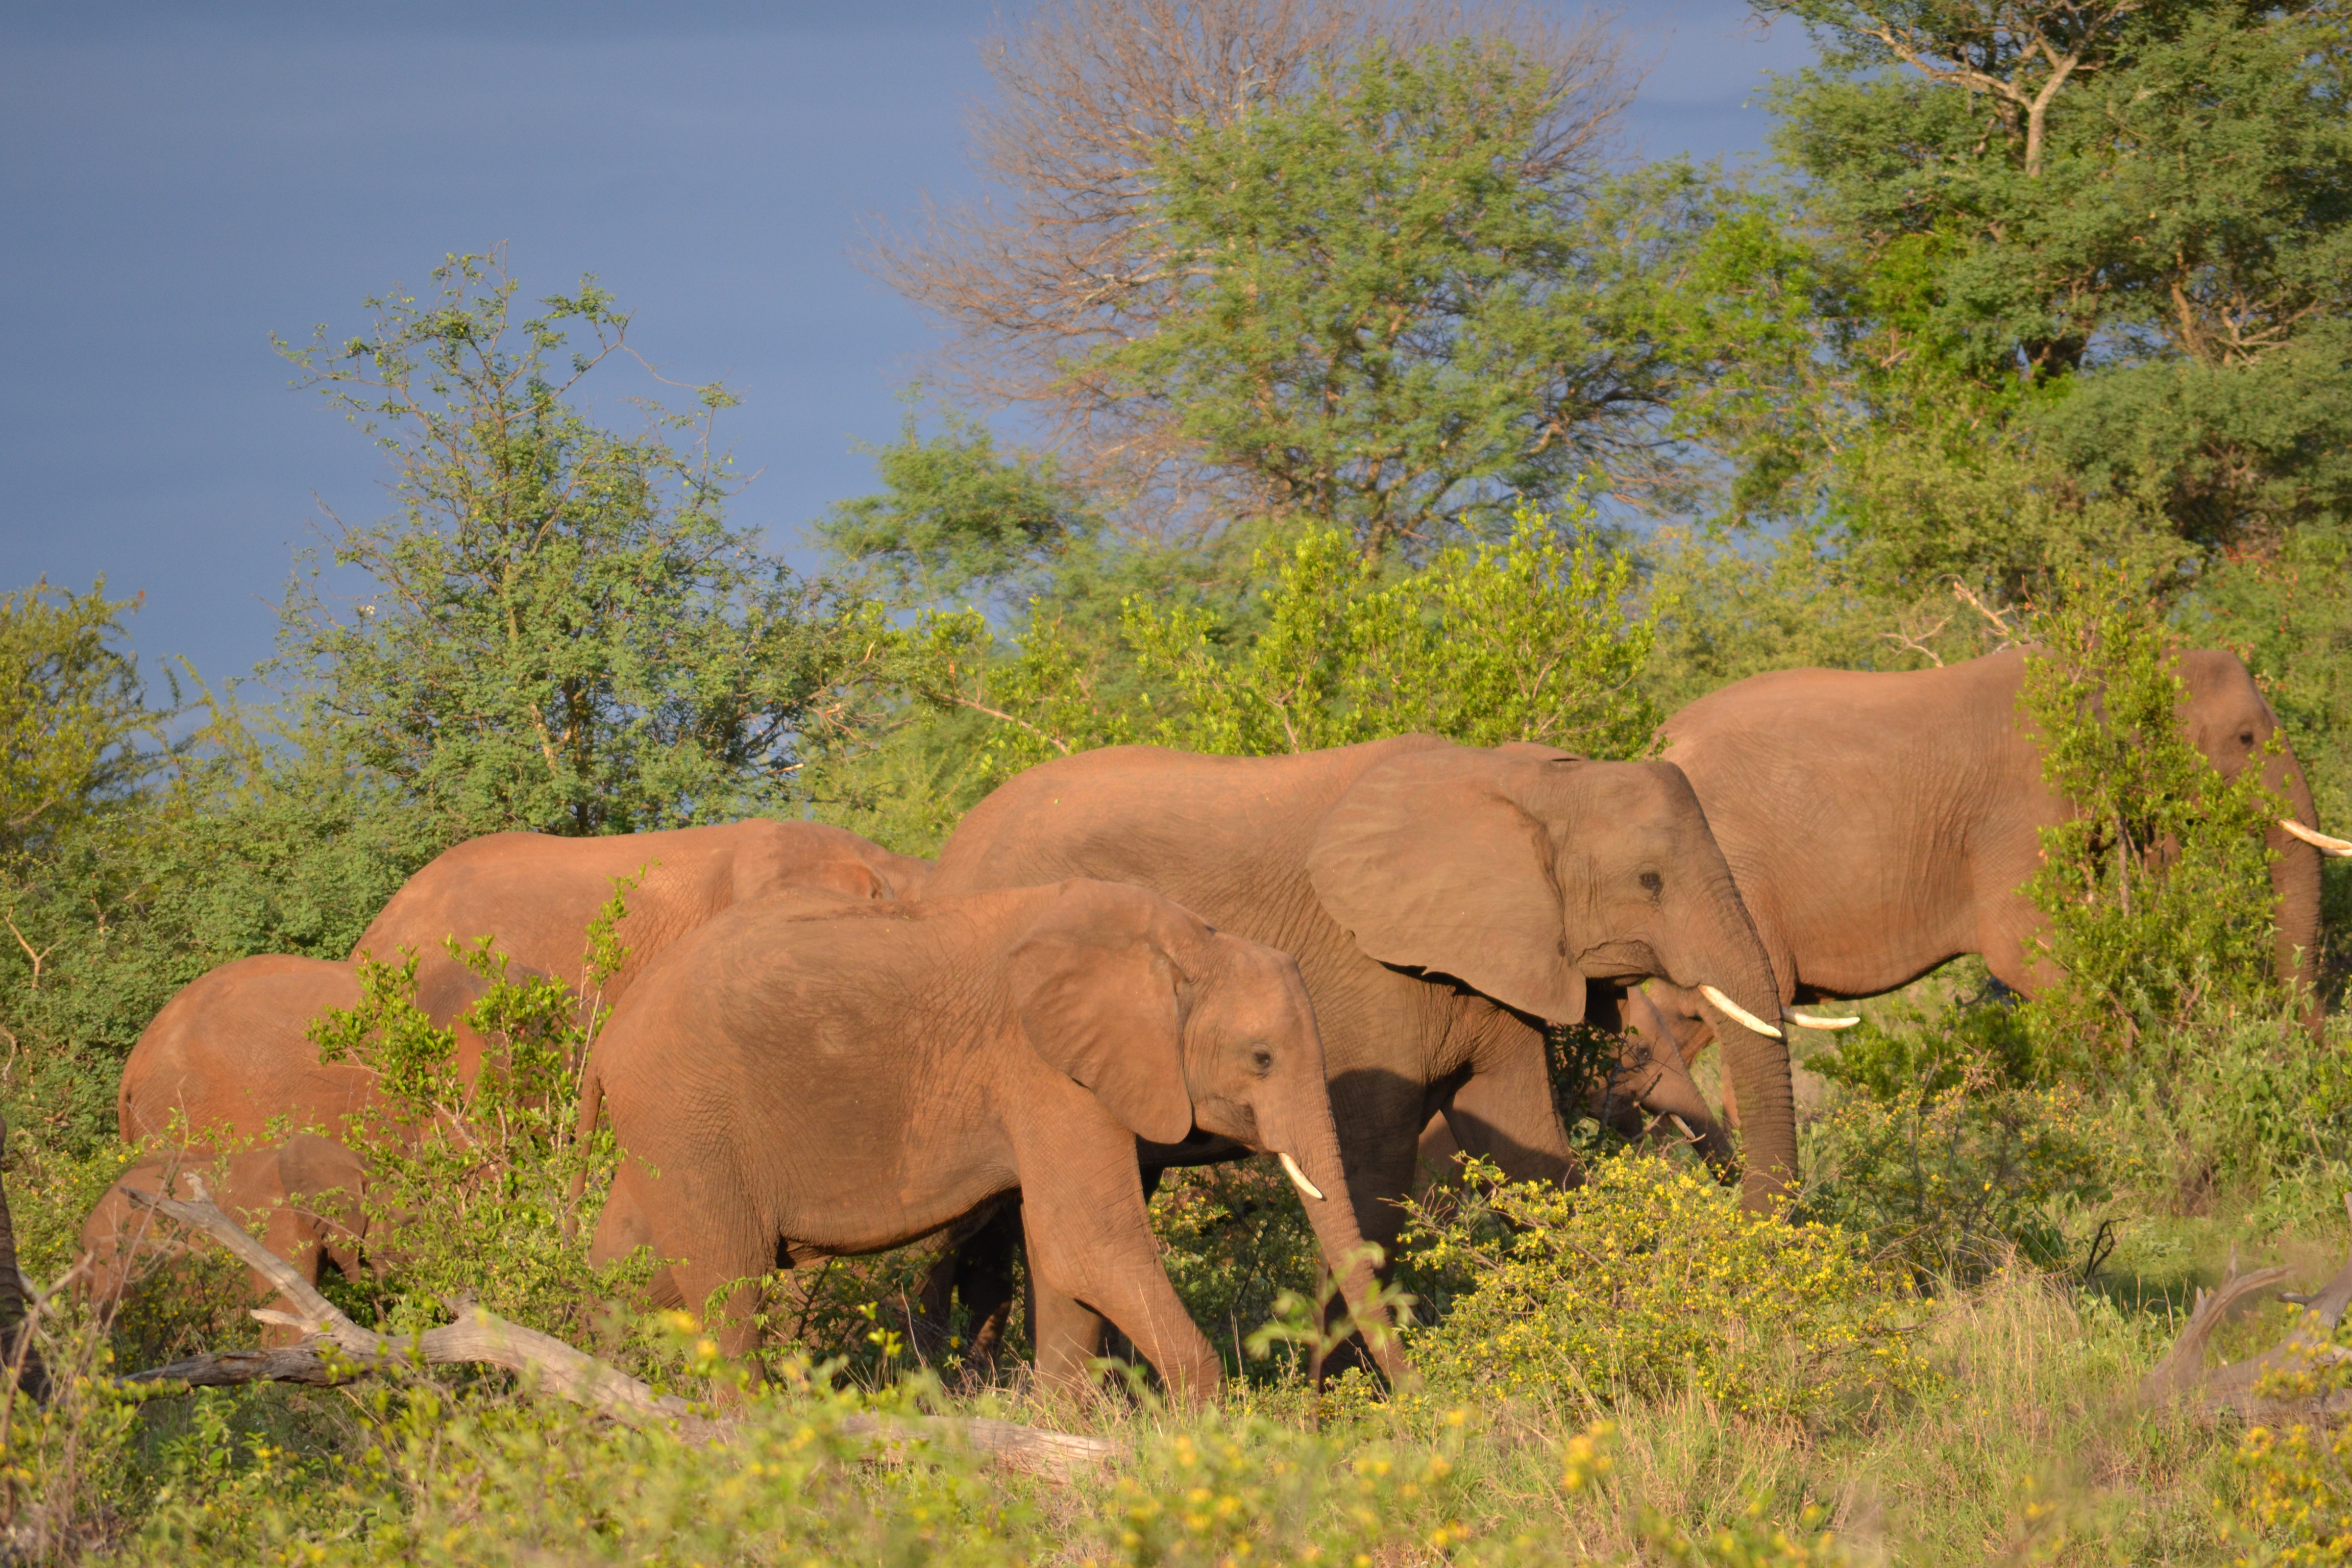 Elephants on an african safari